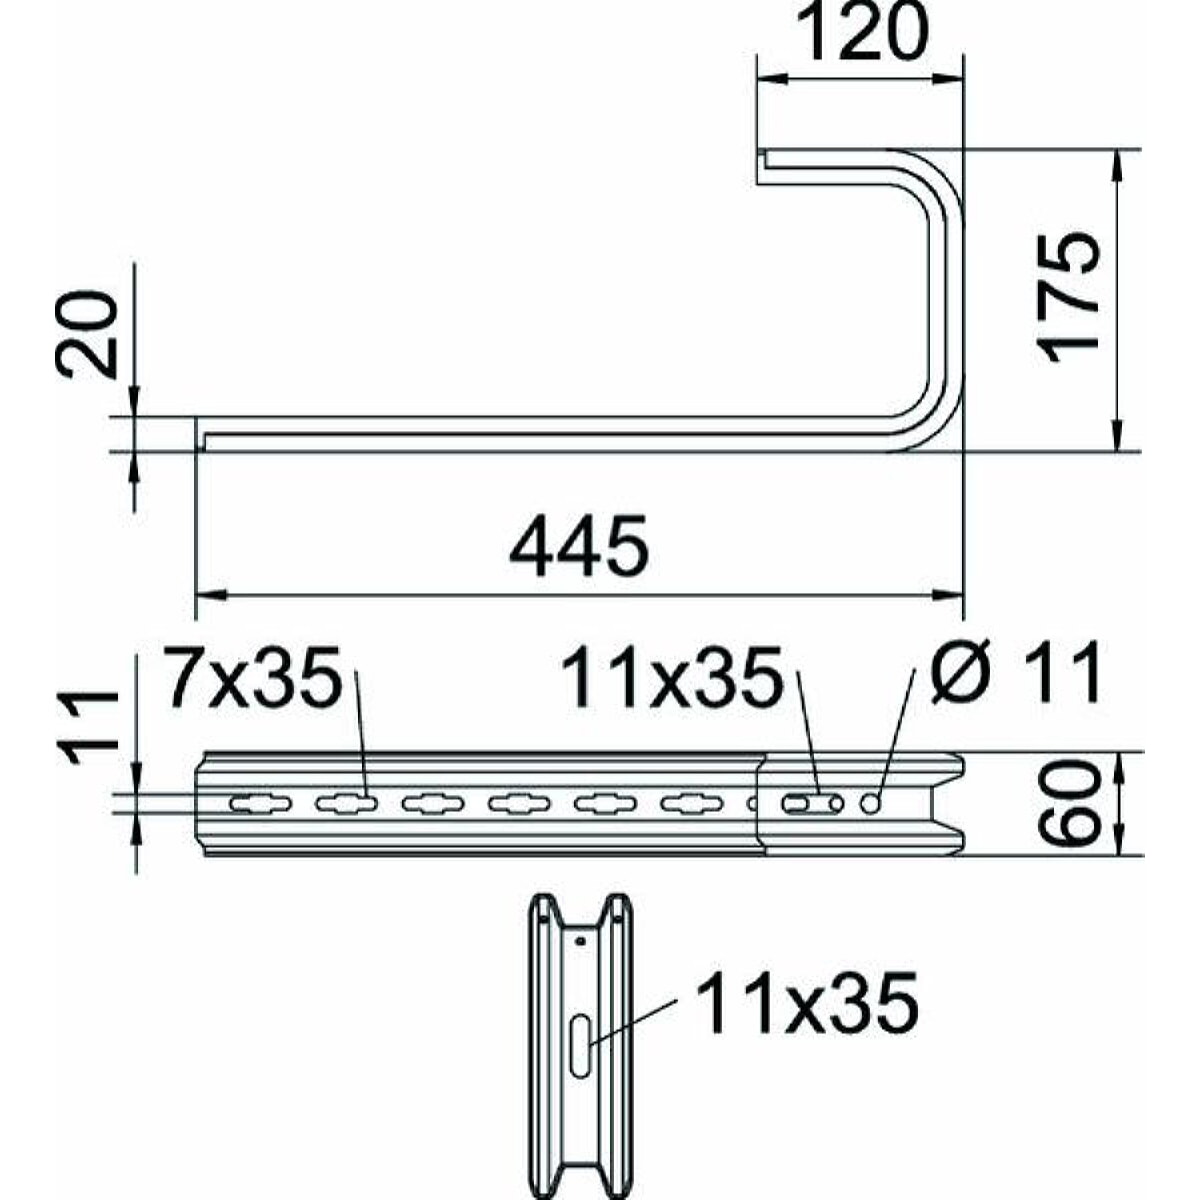 OBO Wand- und Deckenbügel TPD 445 FS TP-Profil